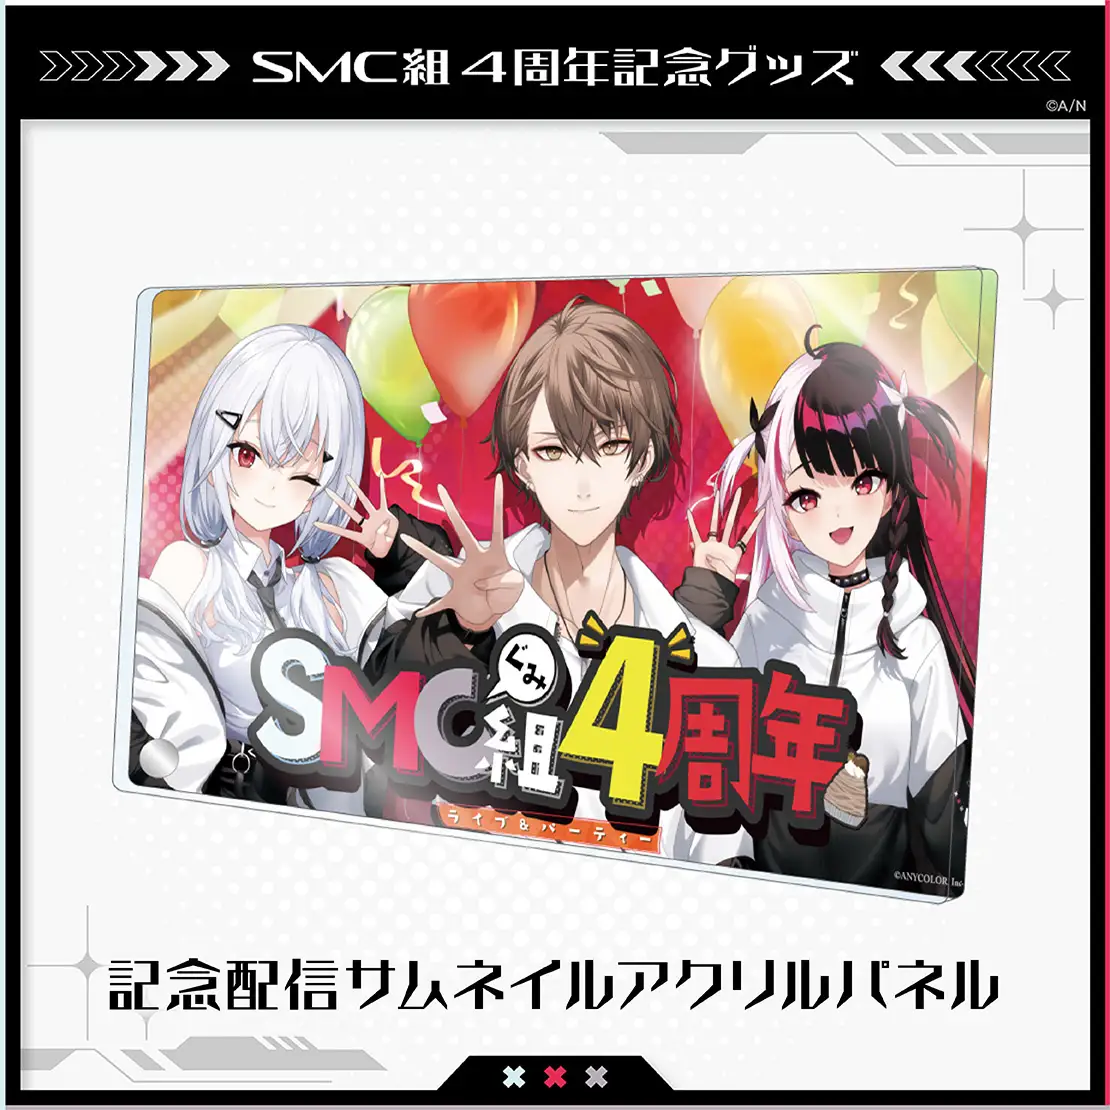 [In-stock]  Nijisanji SMC 4th Anniversary Goods - Cheki / Acrylic Stand